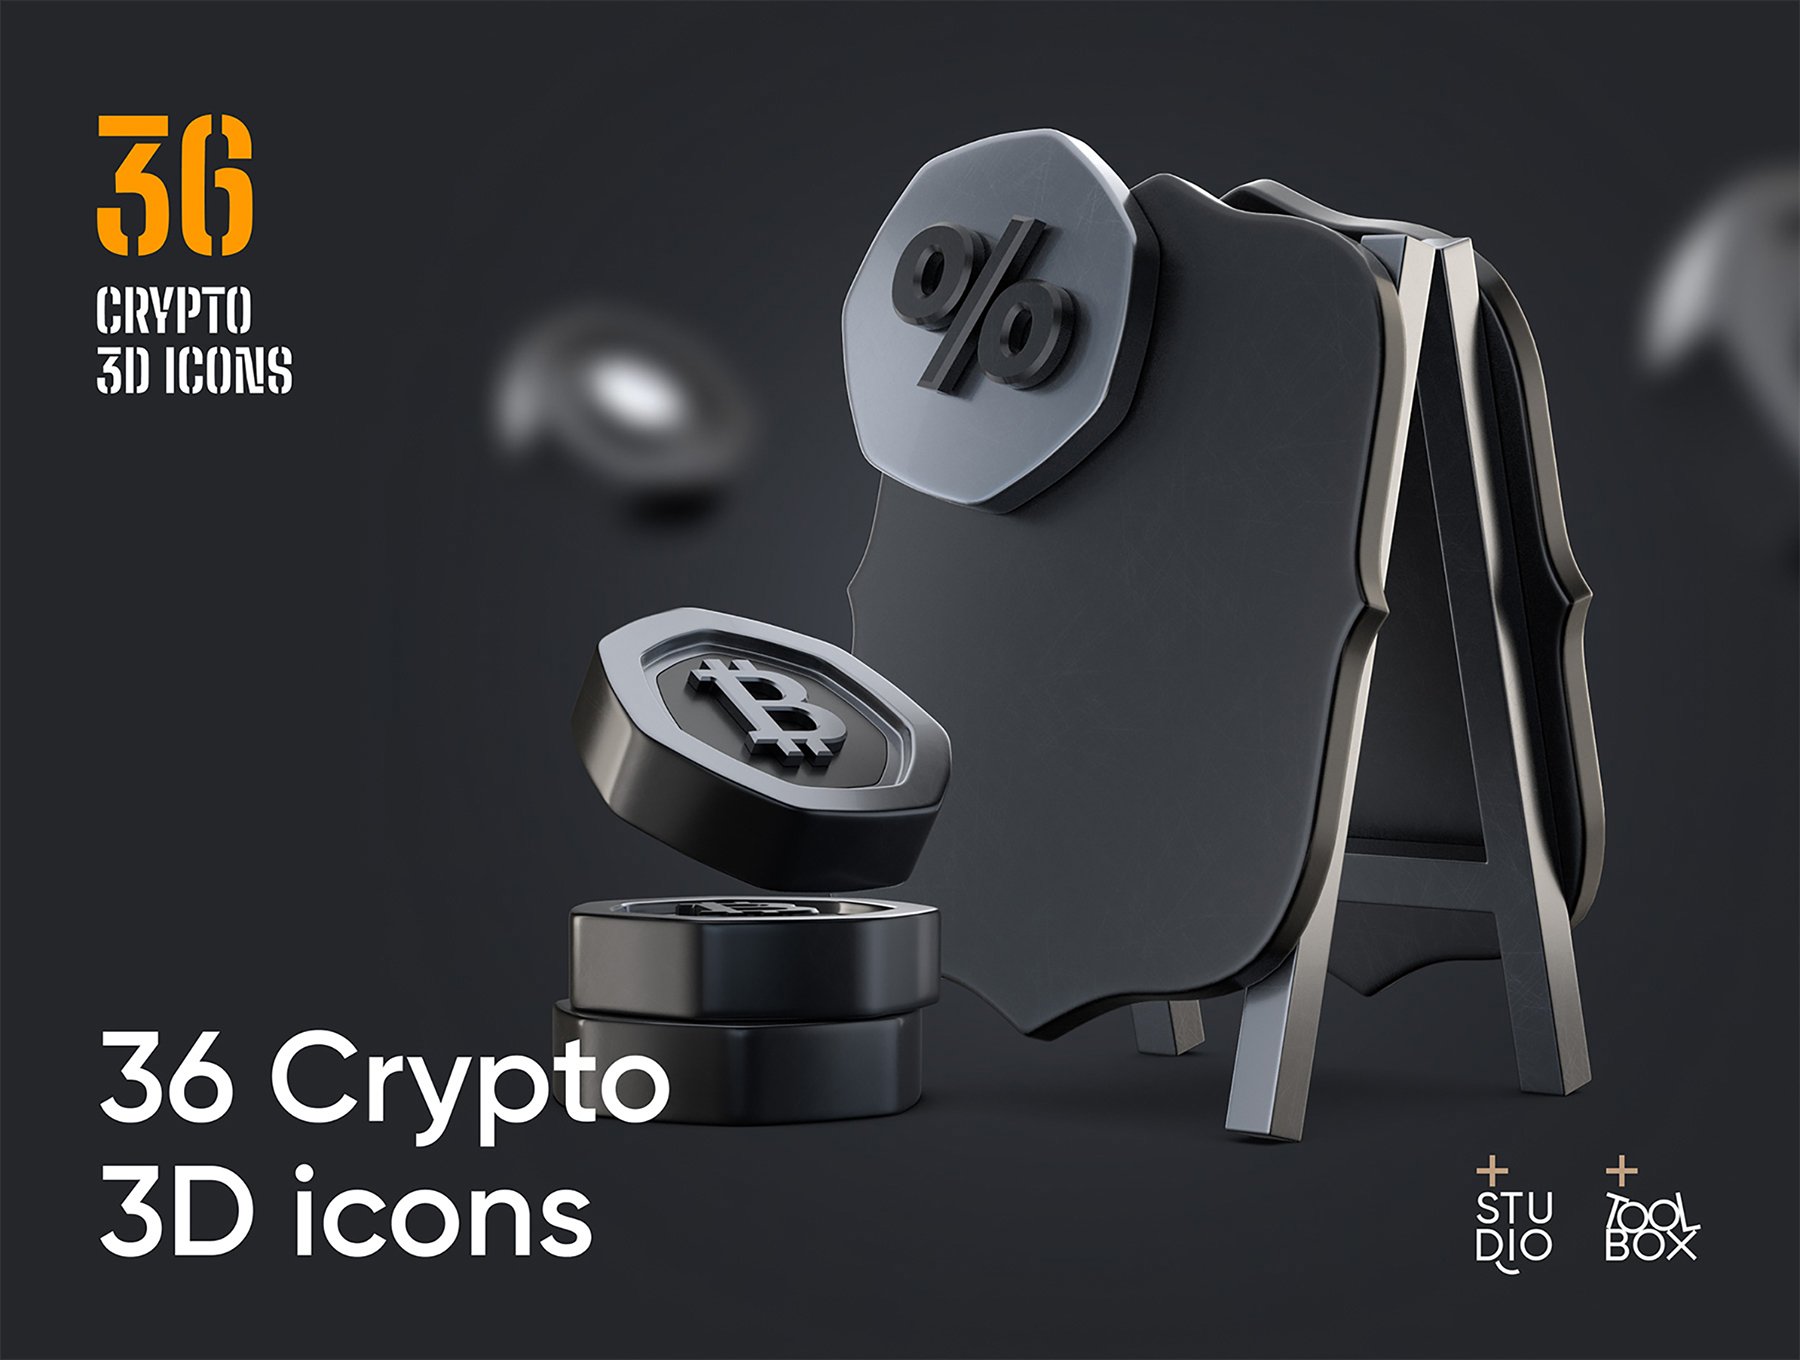 三维渲染加密钱包以太坊比特币虚拟货币主题3D插画图标合辑 36 Crypto 3D icons 图标素材 第2张